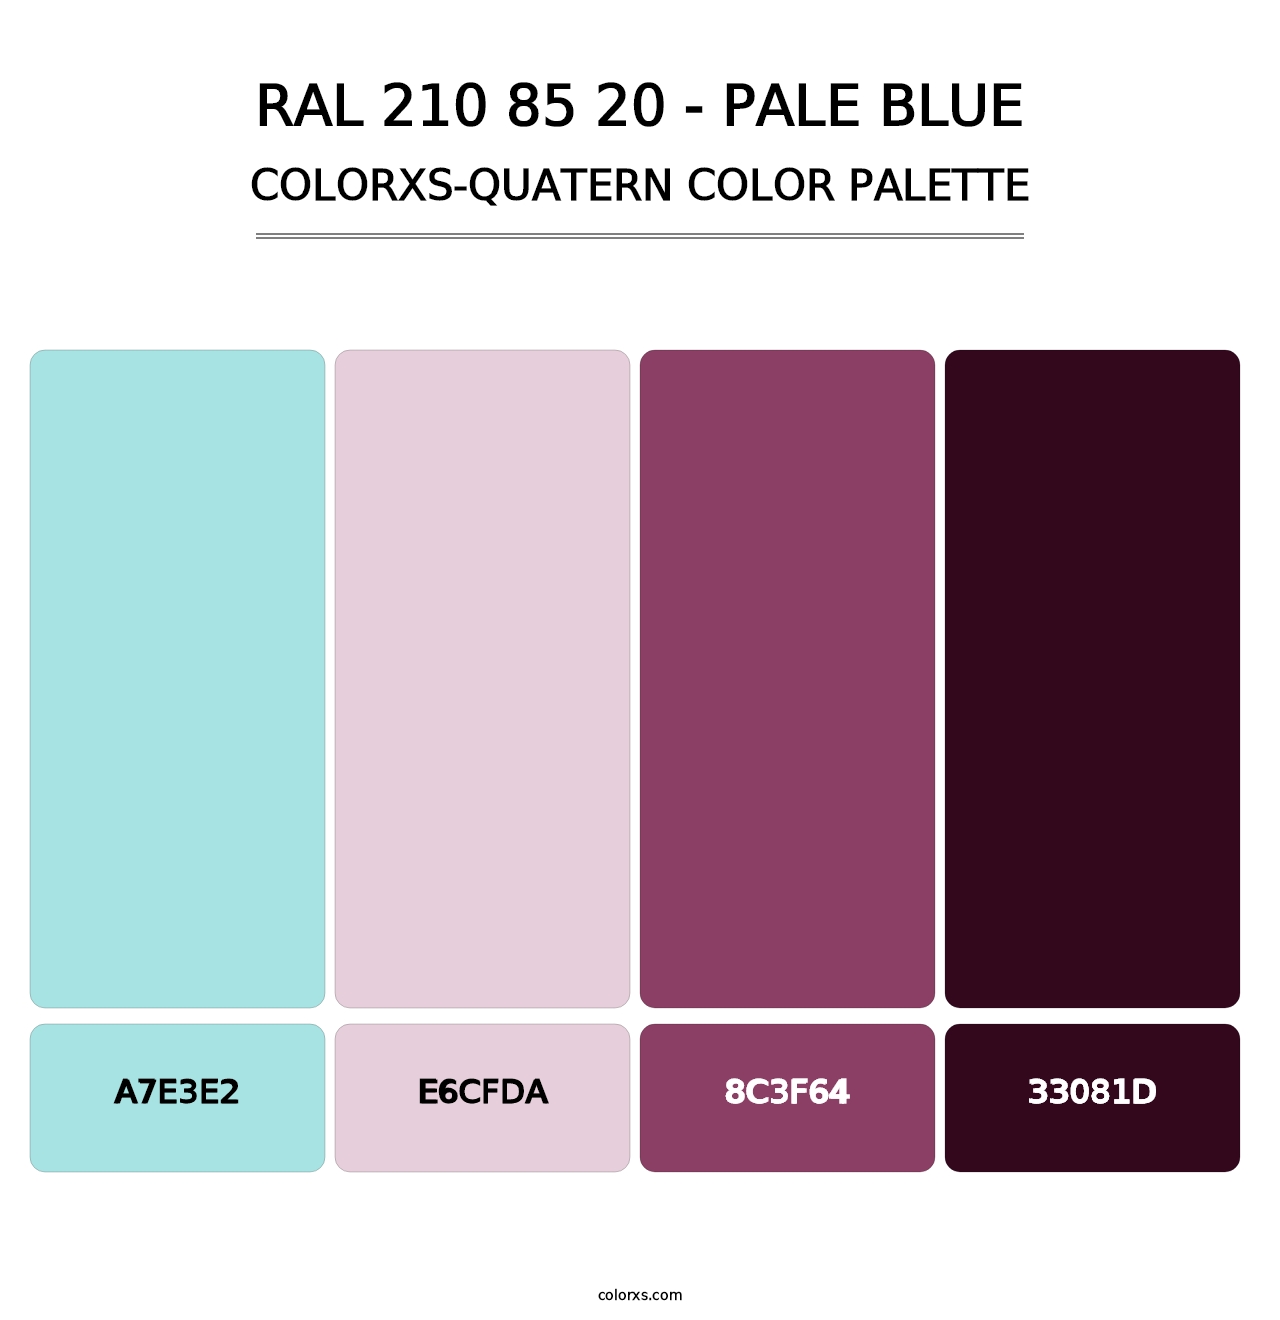 RAL 210 85 20 - Pale Blue - Colorxs Quatern Palette